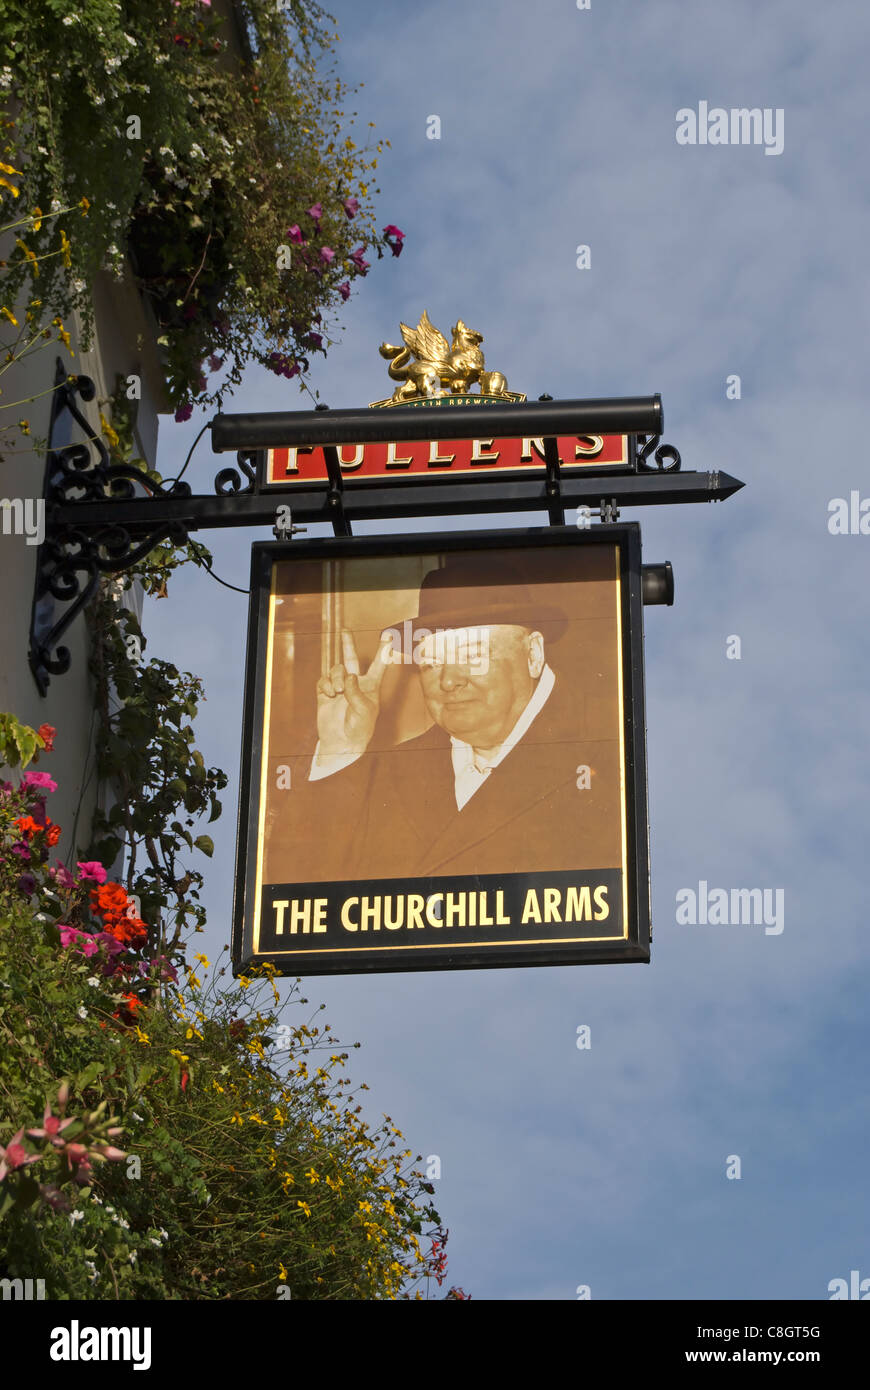 British pub signe pour le Churchill arms, Kensington Church Street, Londres, Angleterre, représentant Churchill's v pour victoire Banque D'Images